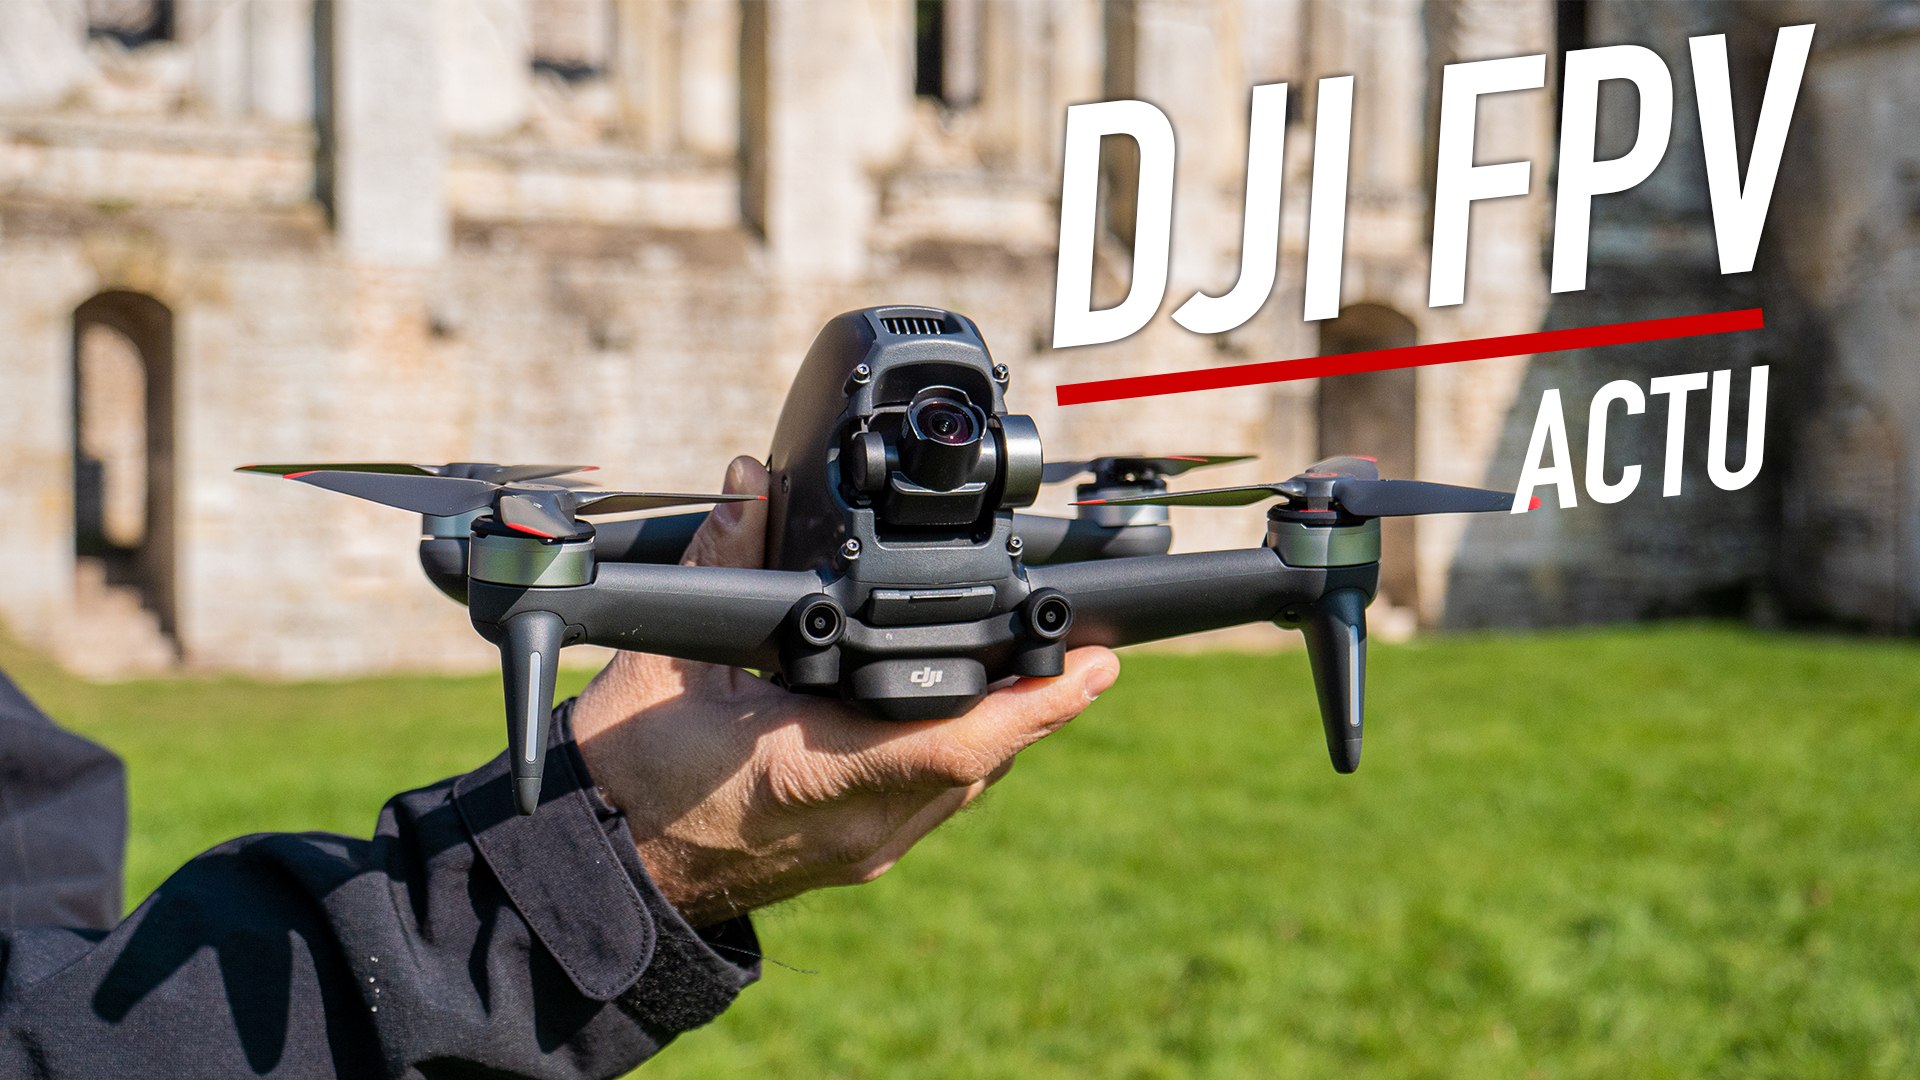 On a testé le nouveau drone FPV de DJI ! - Vidéo Dailymotion